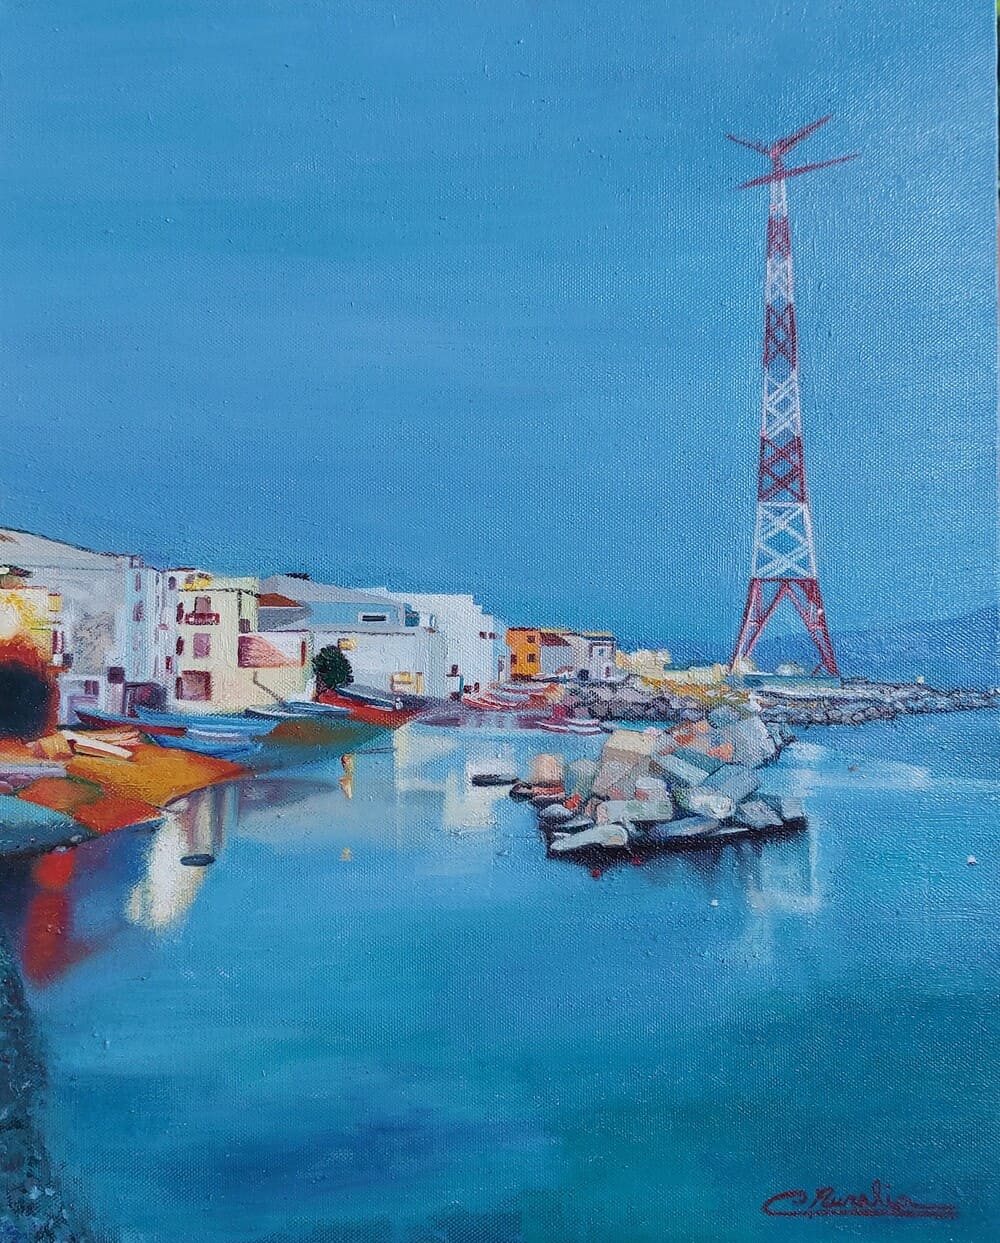 Torre Faro Sicilia, olio su tela con pennello,59×49,2011, disponibile studio Aurelia